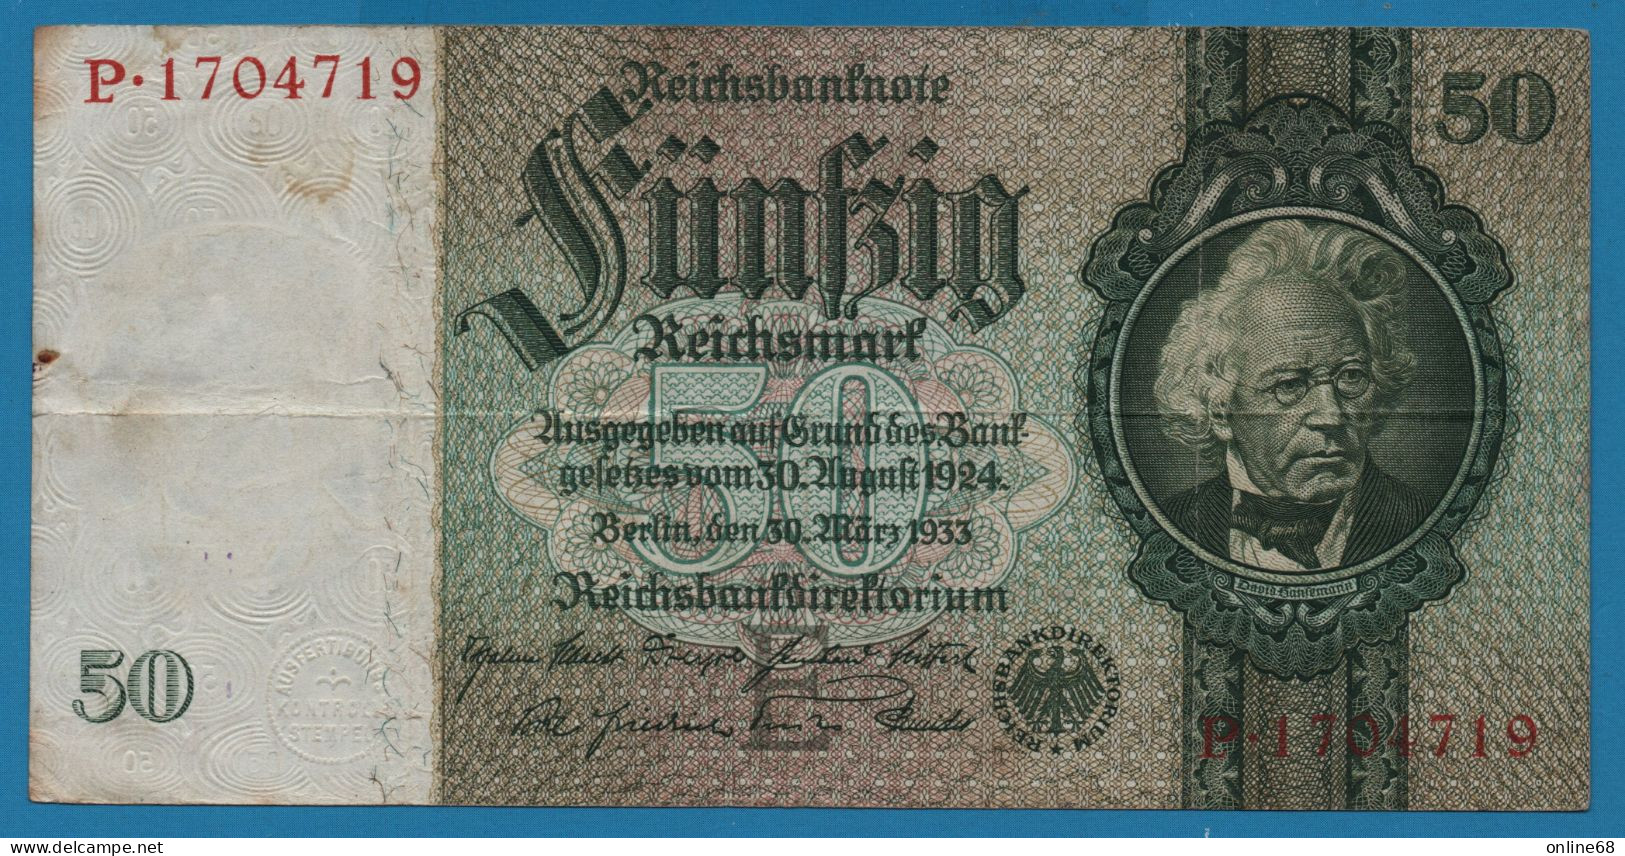 DEUTSCHES REICH 50 REICHSMARK 30.03.1933 LETTER E # P.01704719 P# 182a  David Hansemann - 50 Reichsmark